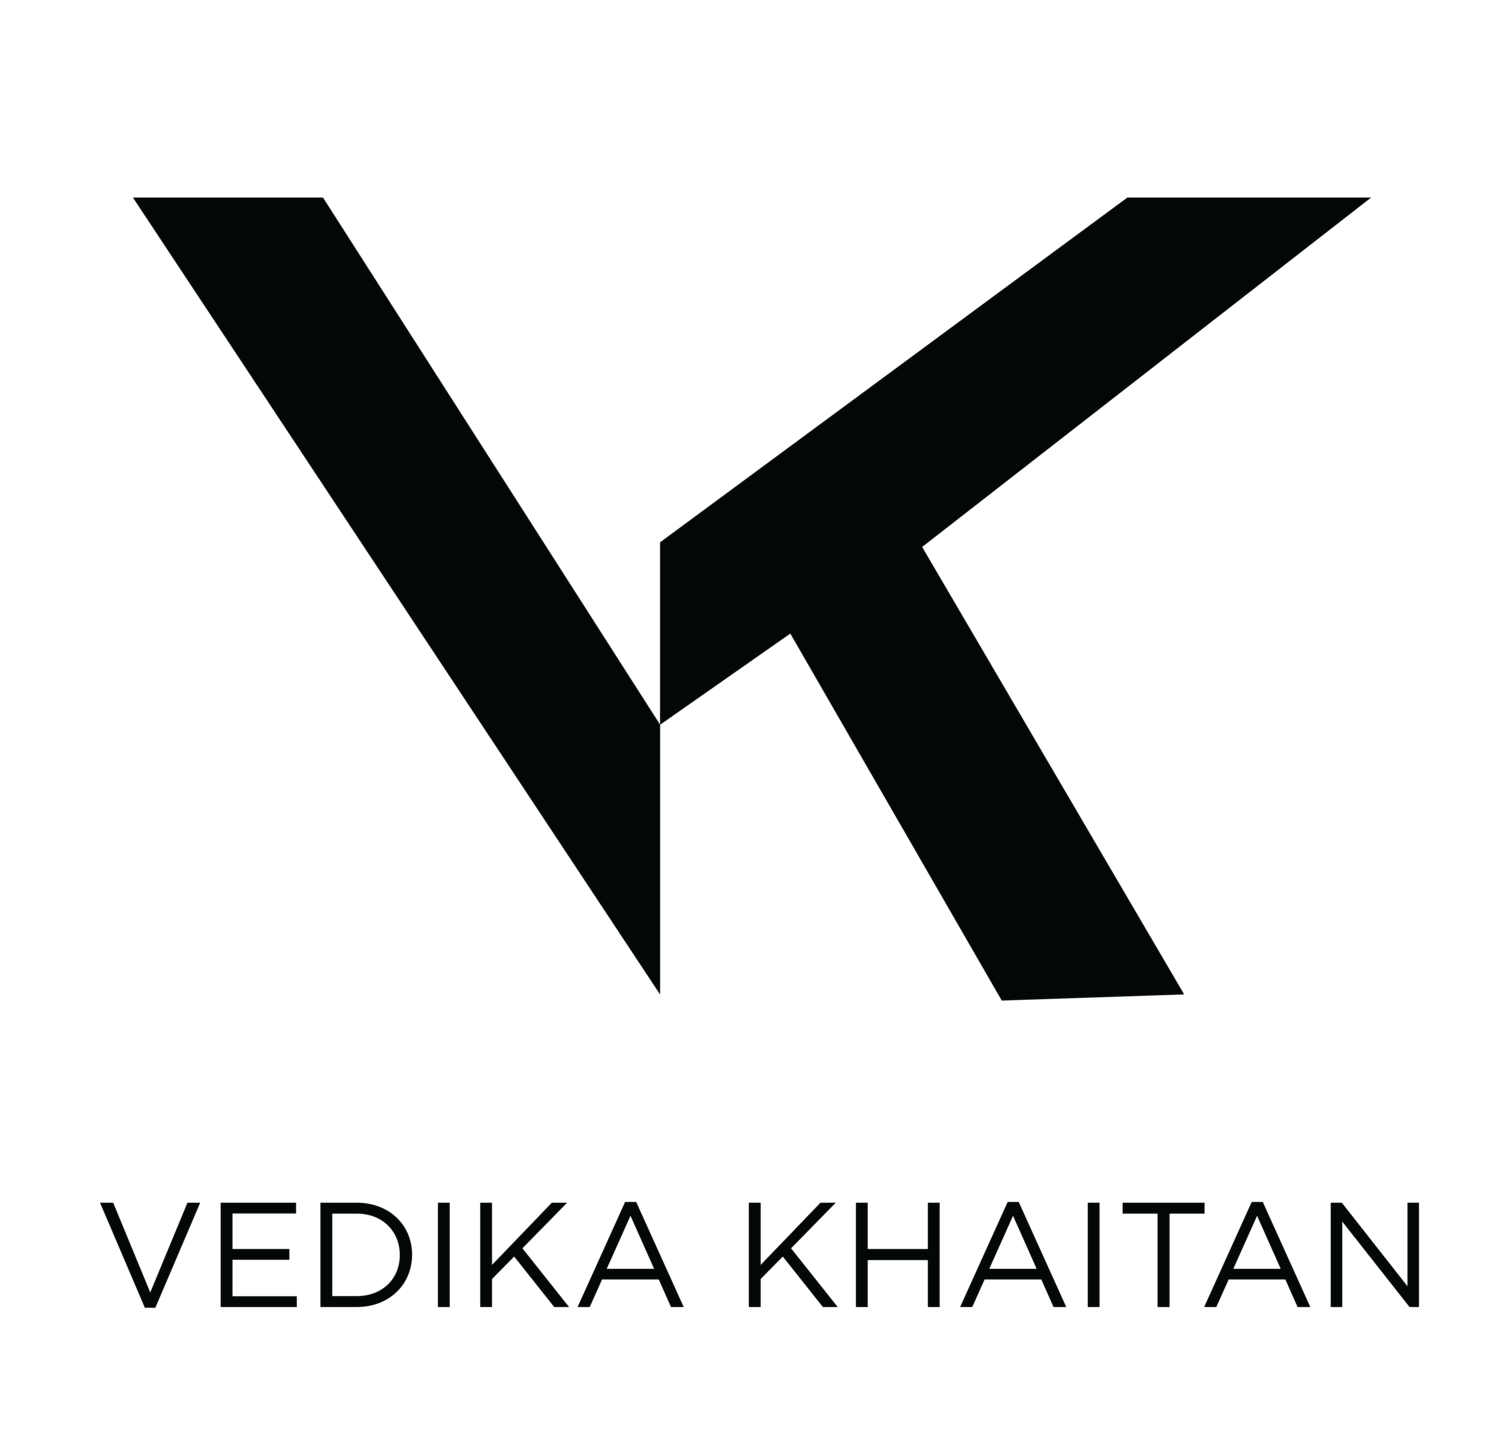 Khaitan Logo - Work — Vedika Khaitan